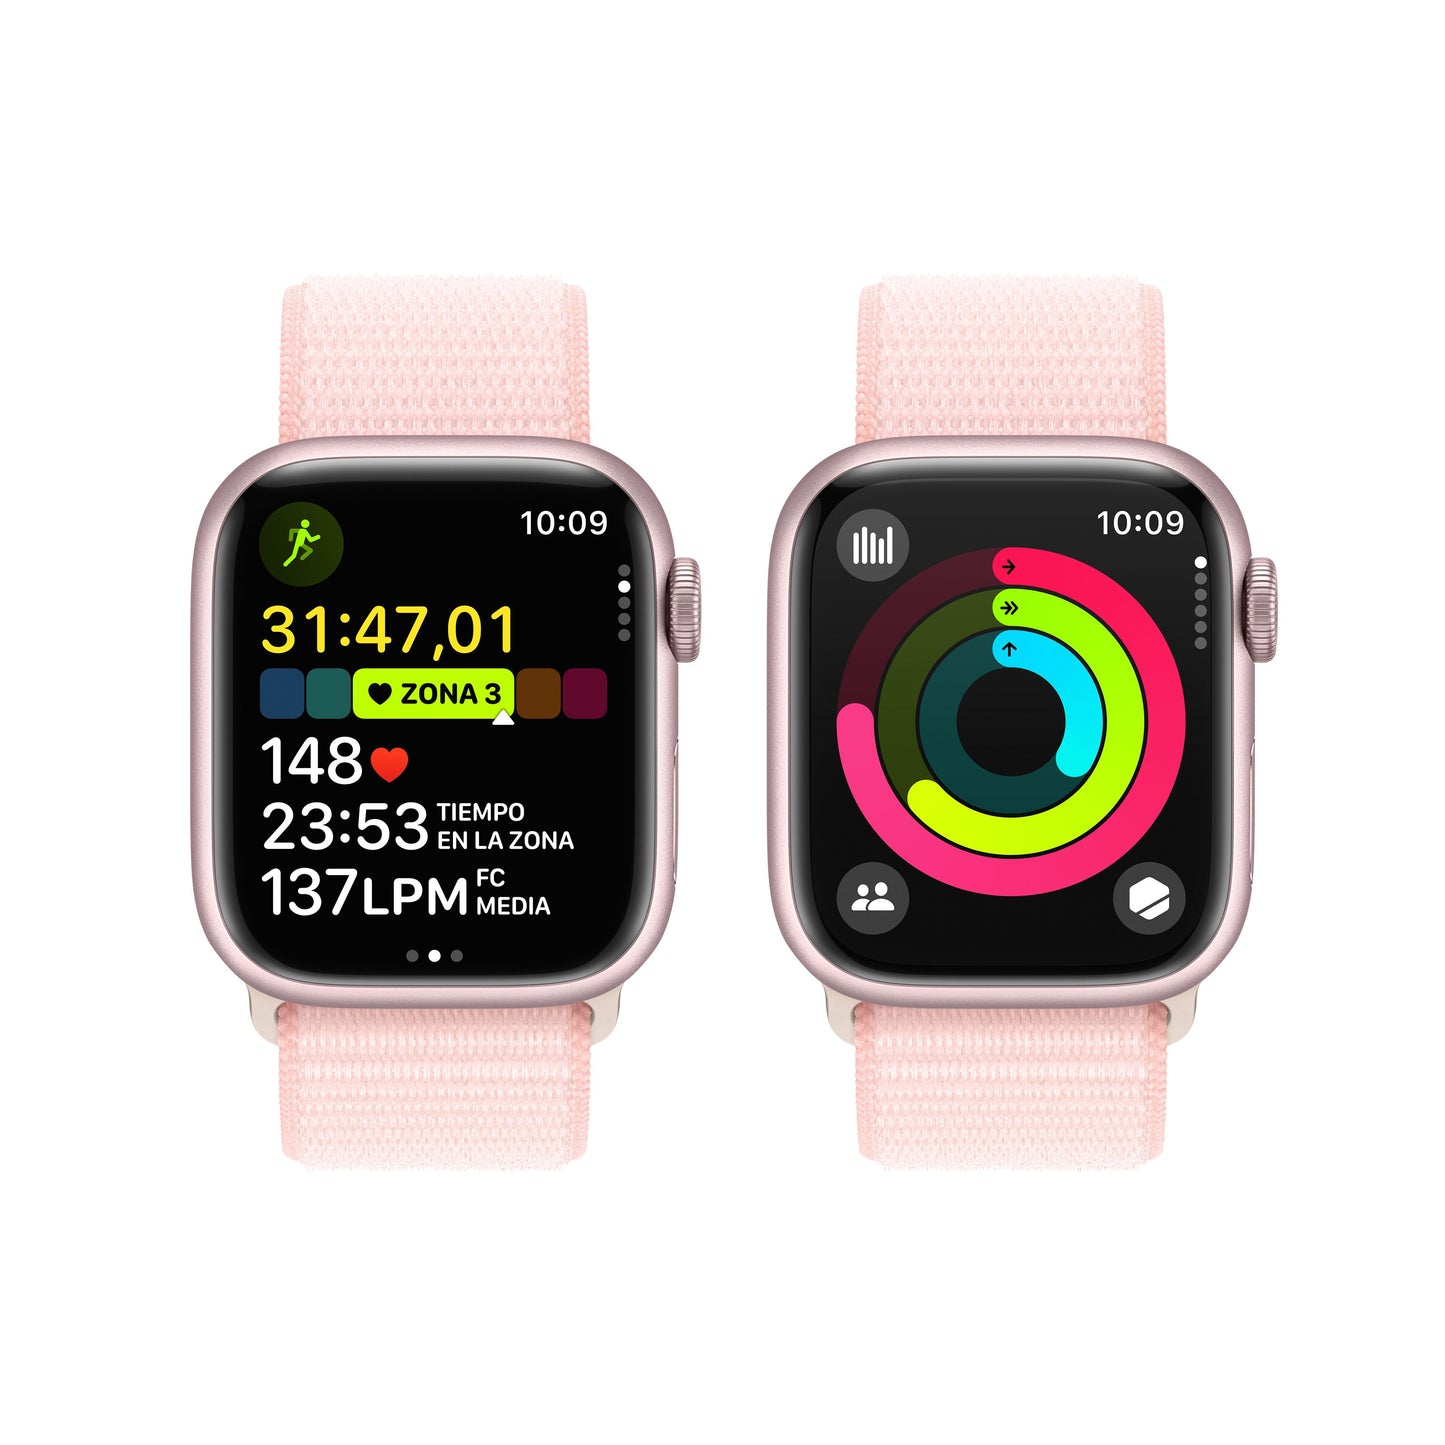 Apple Watch Series 9 (GPS) - Caja de aluminio en rosa de 41 mm - Correa Loop deportiva rosa claro